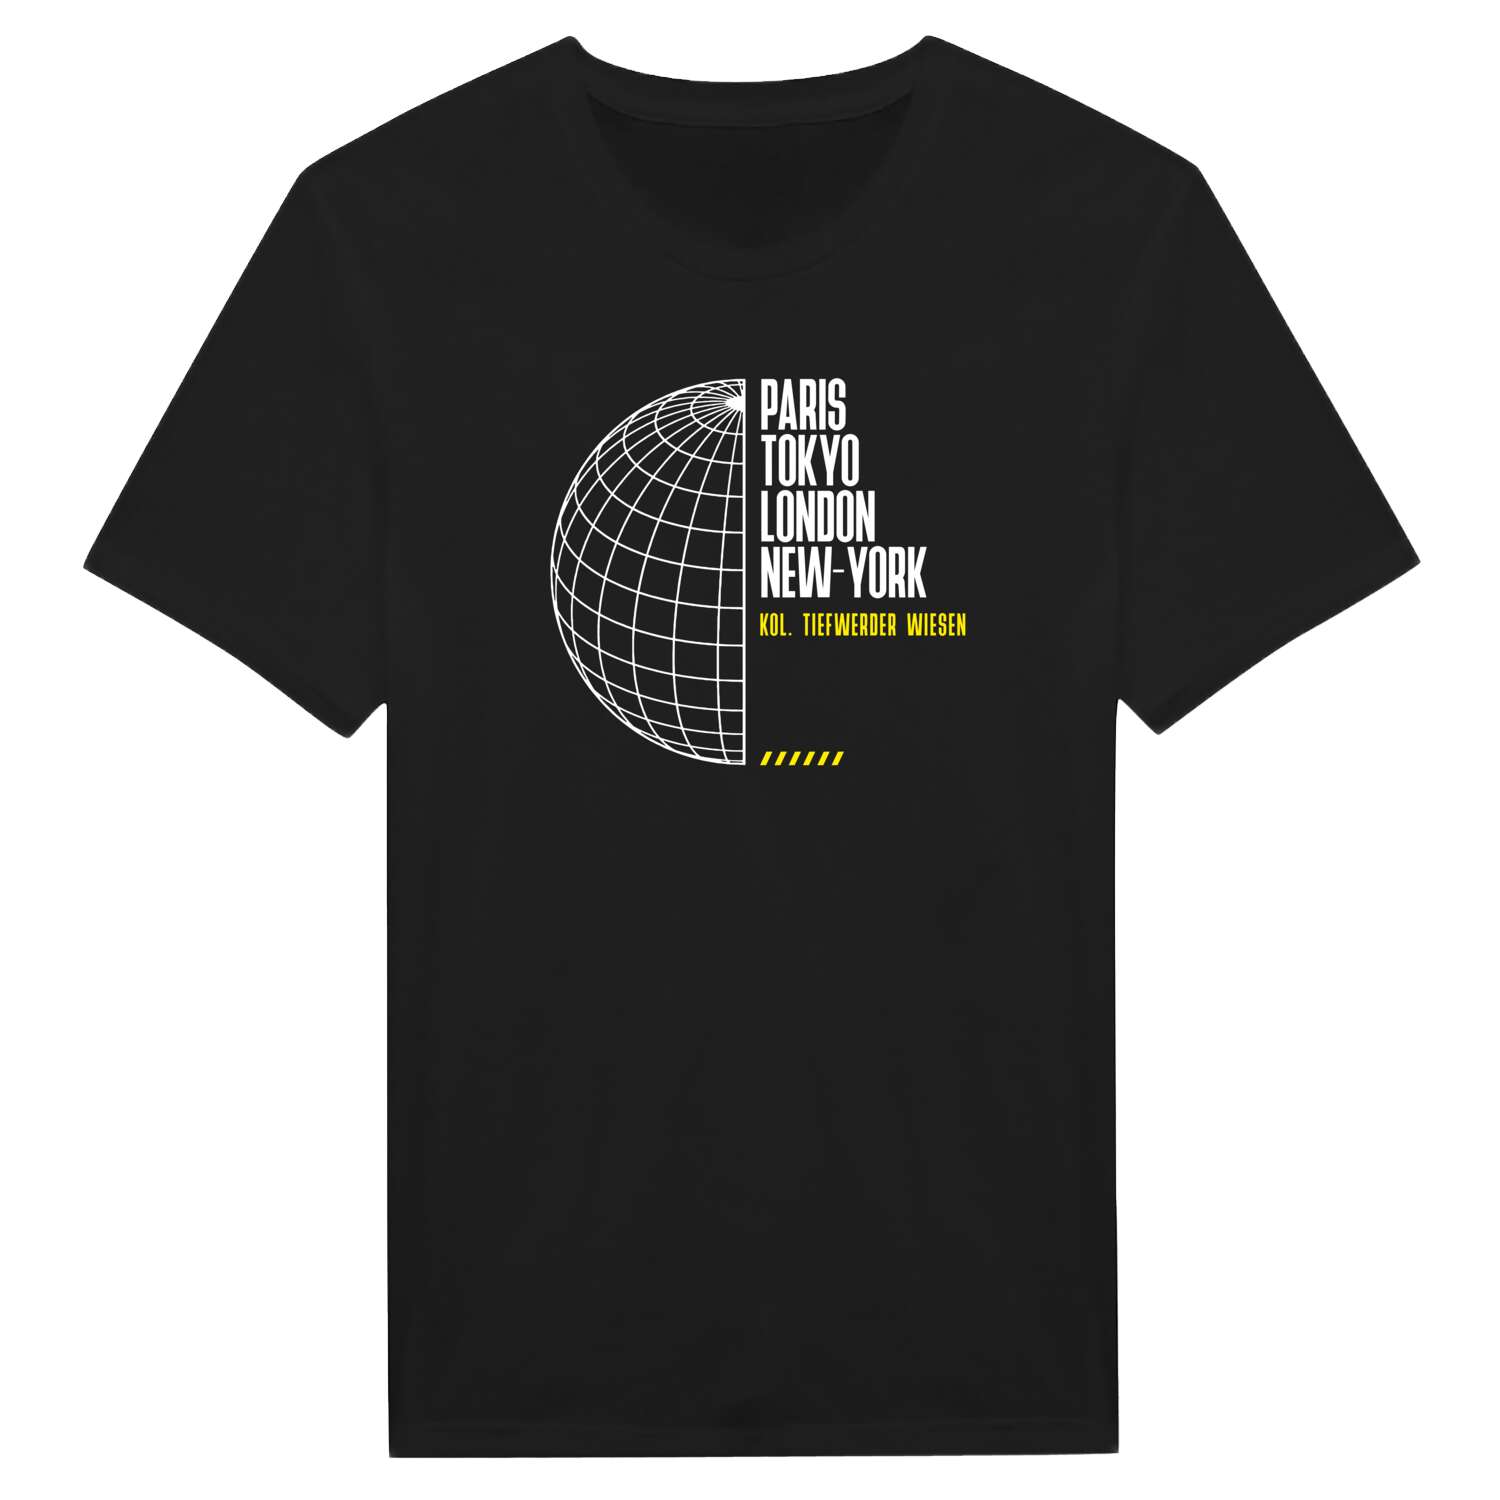 Kol. Tiefwerder Wiesen T-Shirt »Paris Tokyo London«